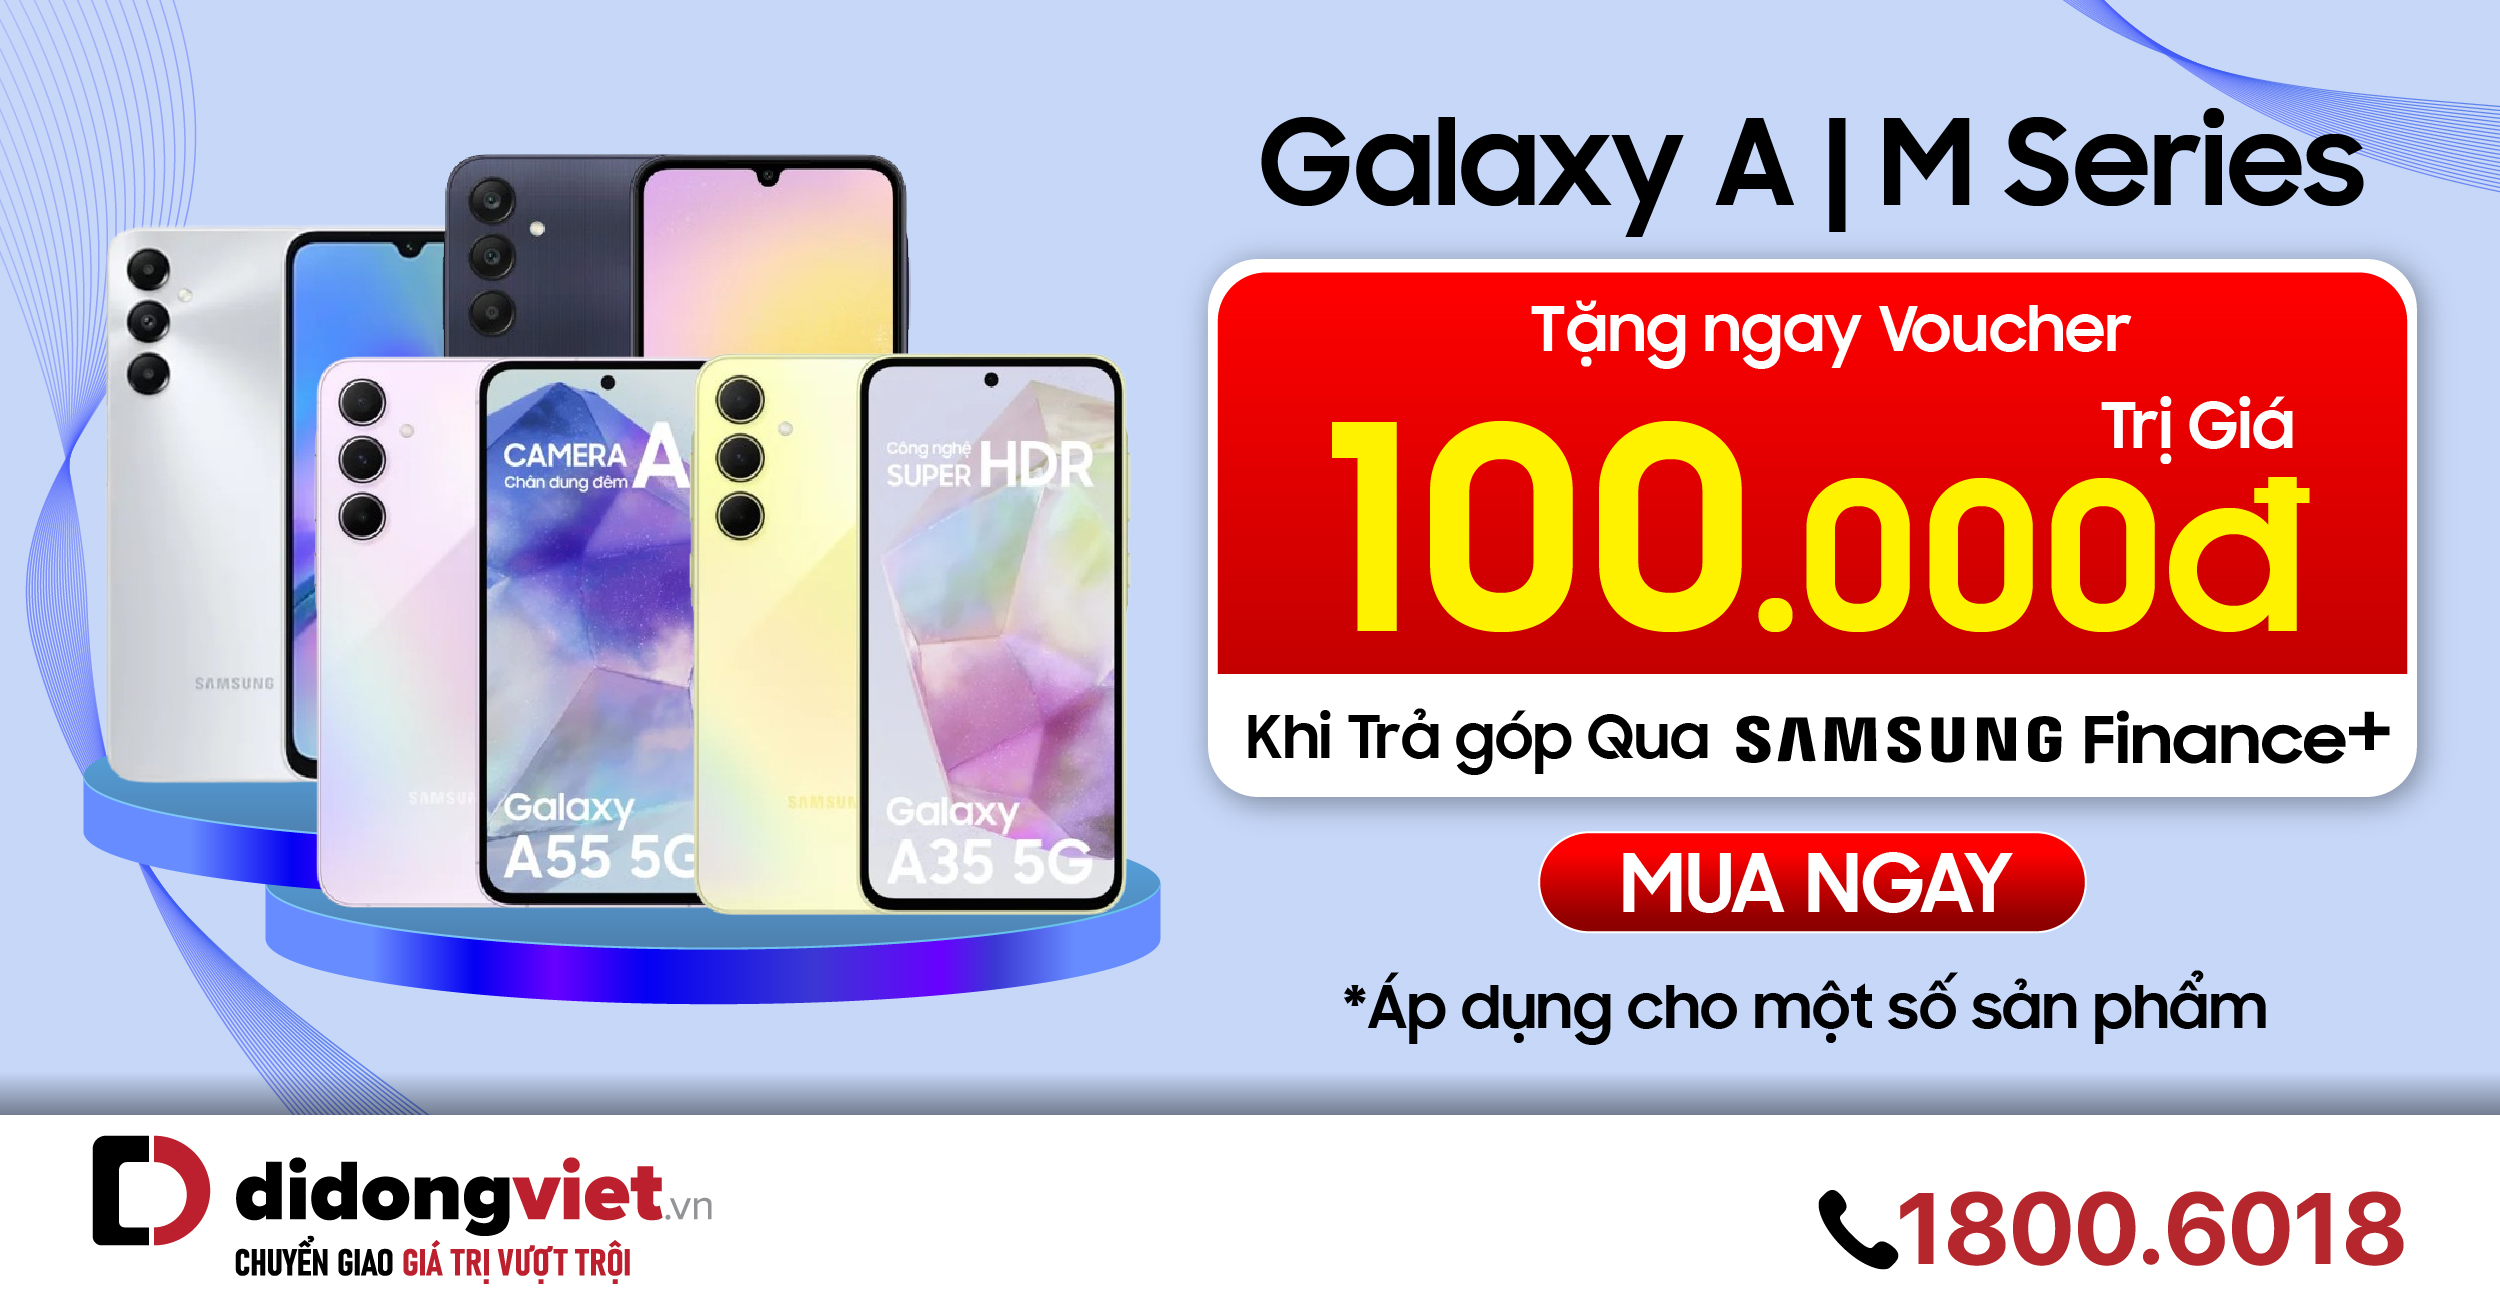 Sở hữu Galaxy A | M Series đơn giản với Trả góp 4 KHÔNG qua Samsung Finance+: Tặng ngay thêm 100.000đ.